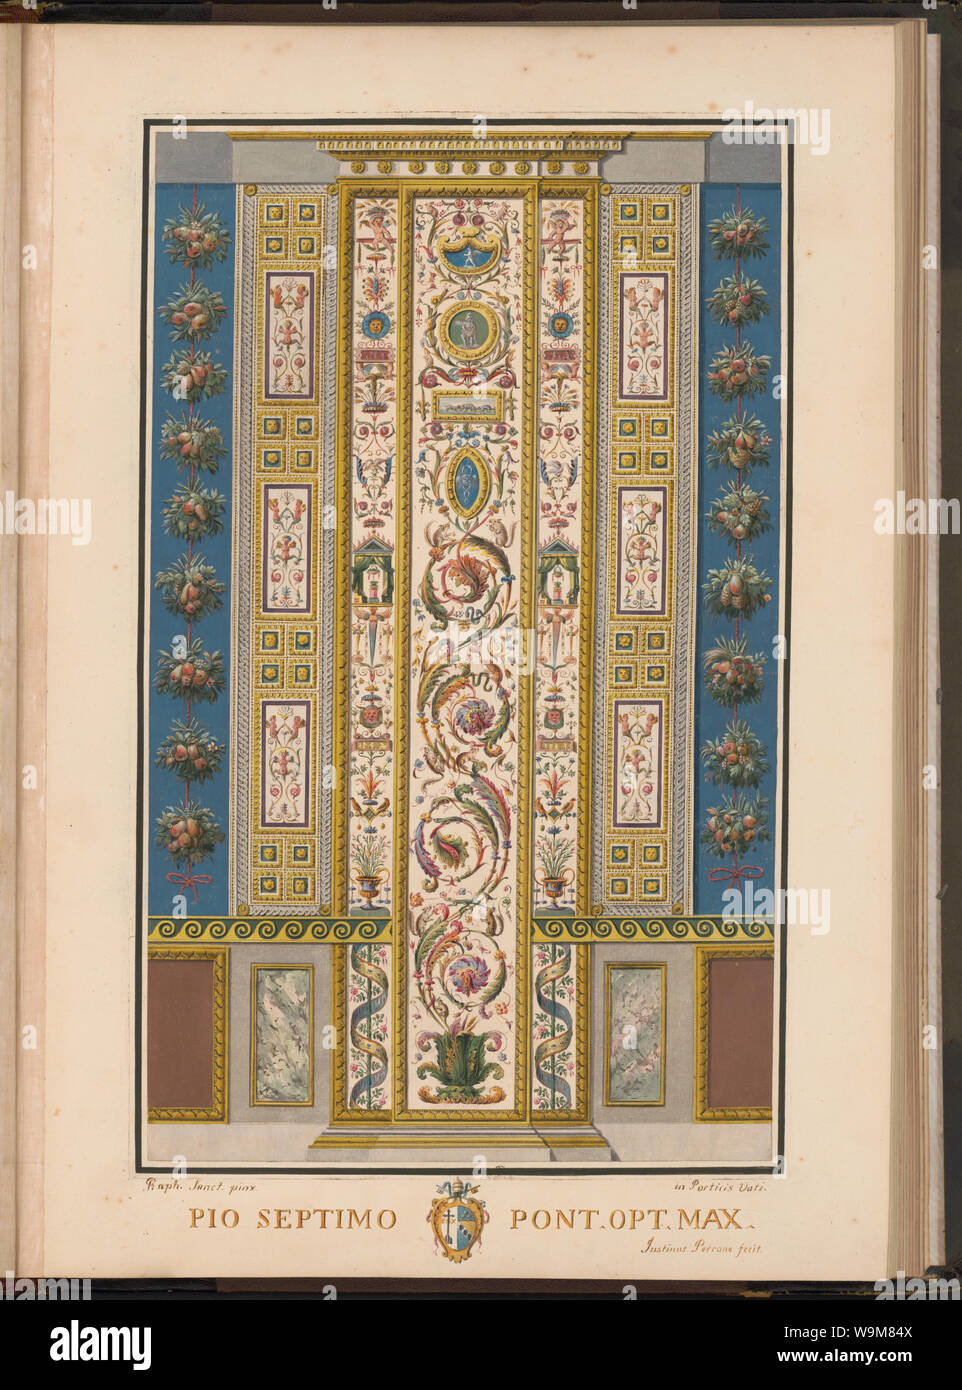 Arabesque decorazioni sul pilastro nella Loggia del Vaticano] / Raph. Sanct. pinx ; Justinus Perrone fecit Foto Stock